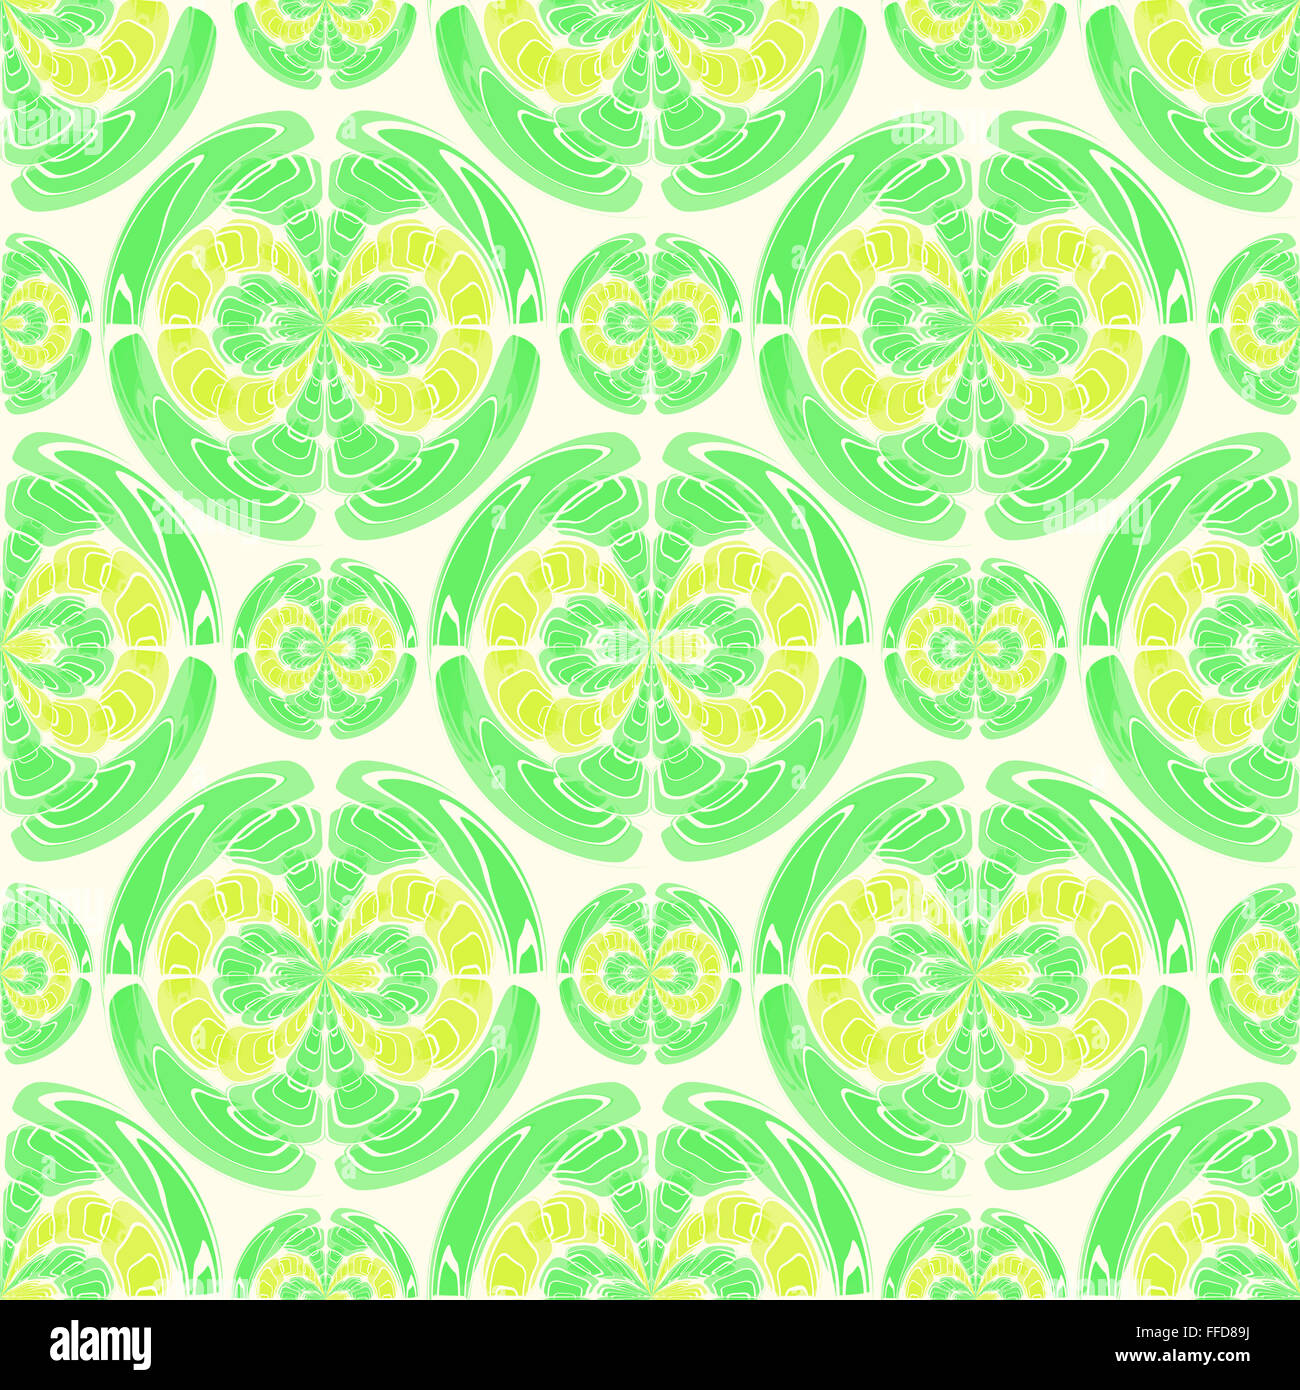 Fruchtig-Muster mit geometrischen Formen, in hellen Tönen von gelb und grün auf einem gelben Hintergrund. Digitale Kunst. Stockfoto